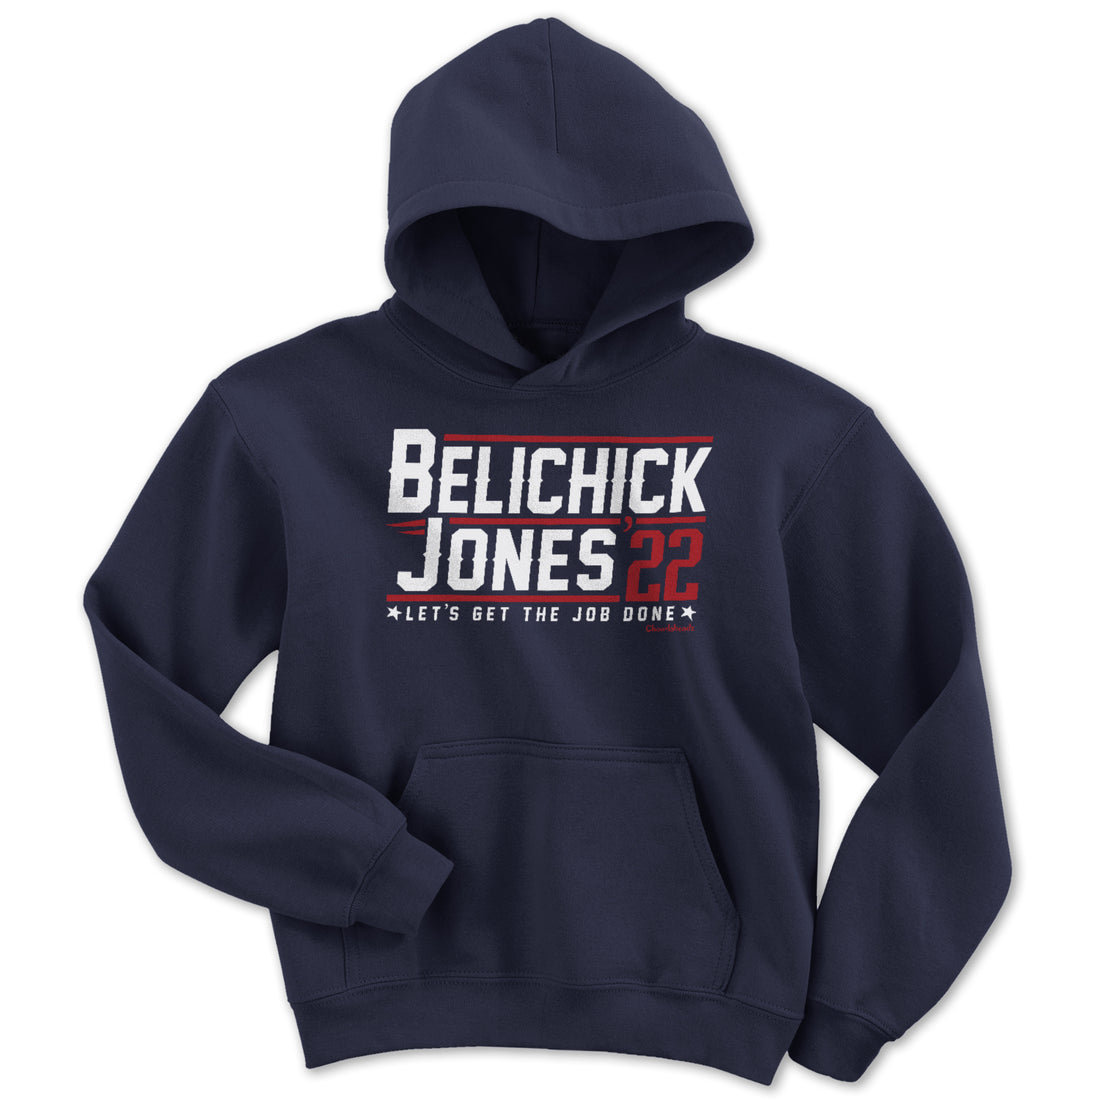 Belichick Jones &